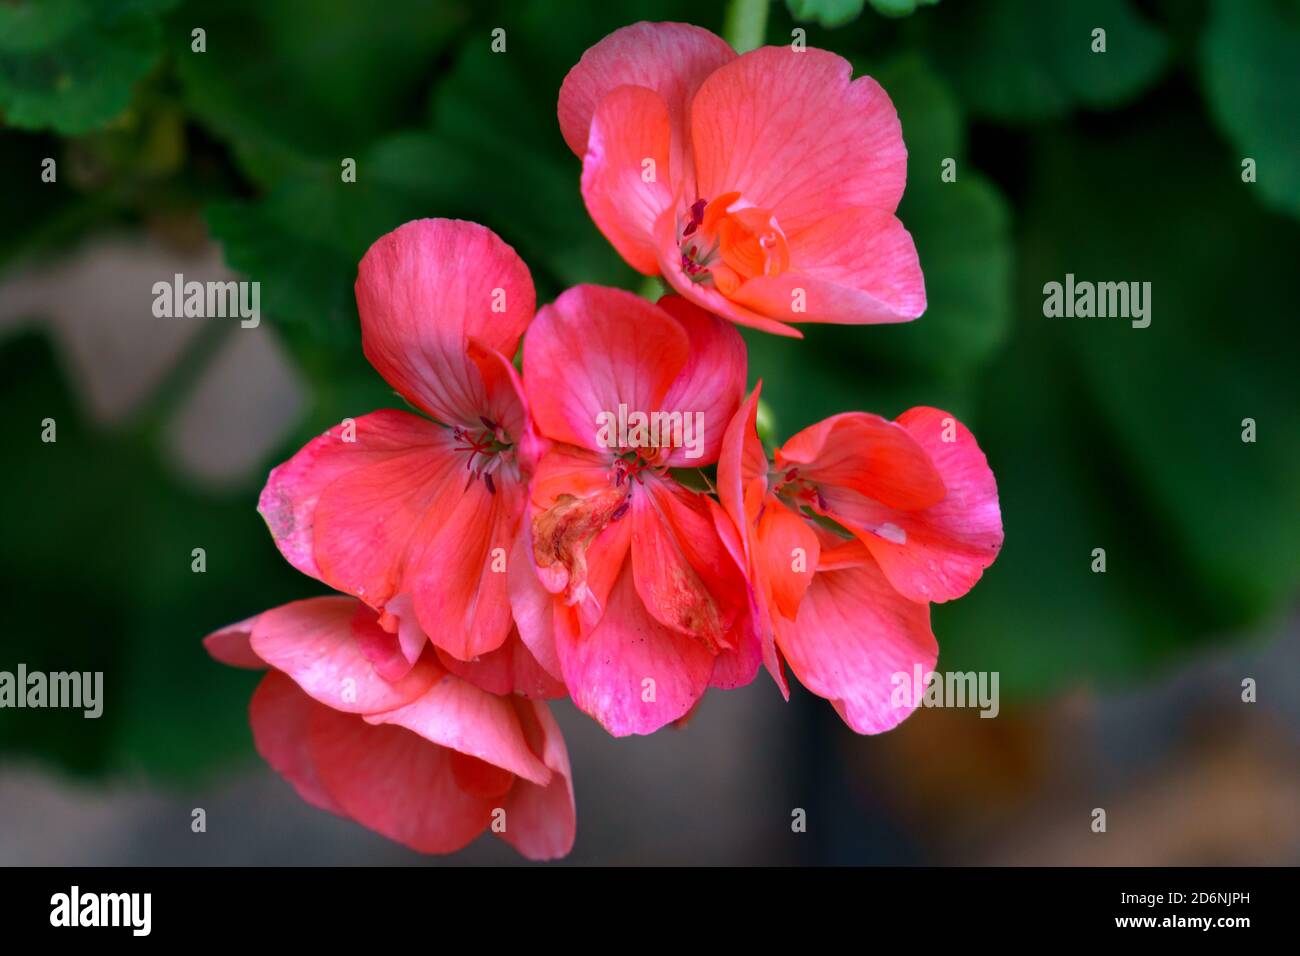 Rosa schöne Geranienblume auf dunklem Hintergrund. Stockfoto